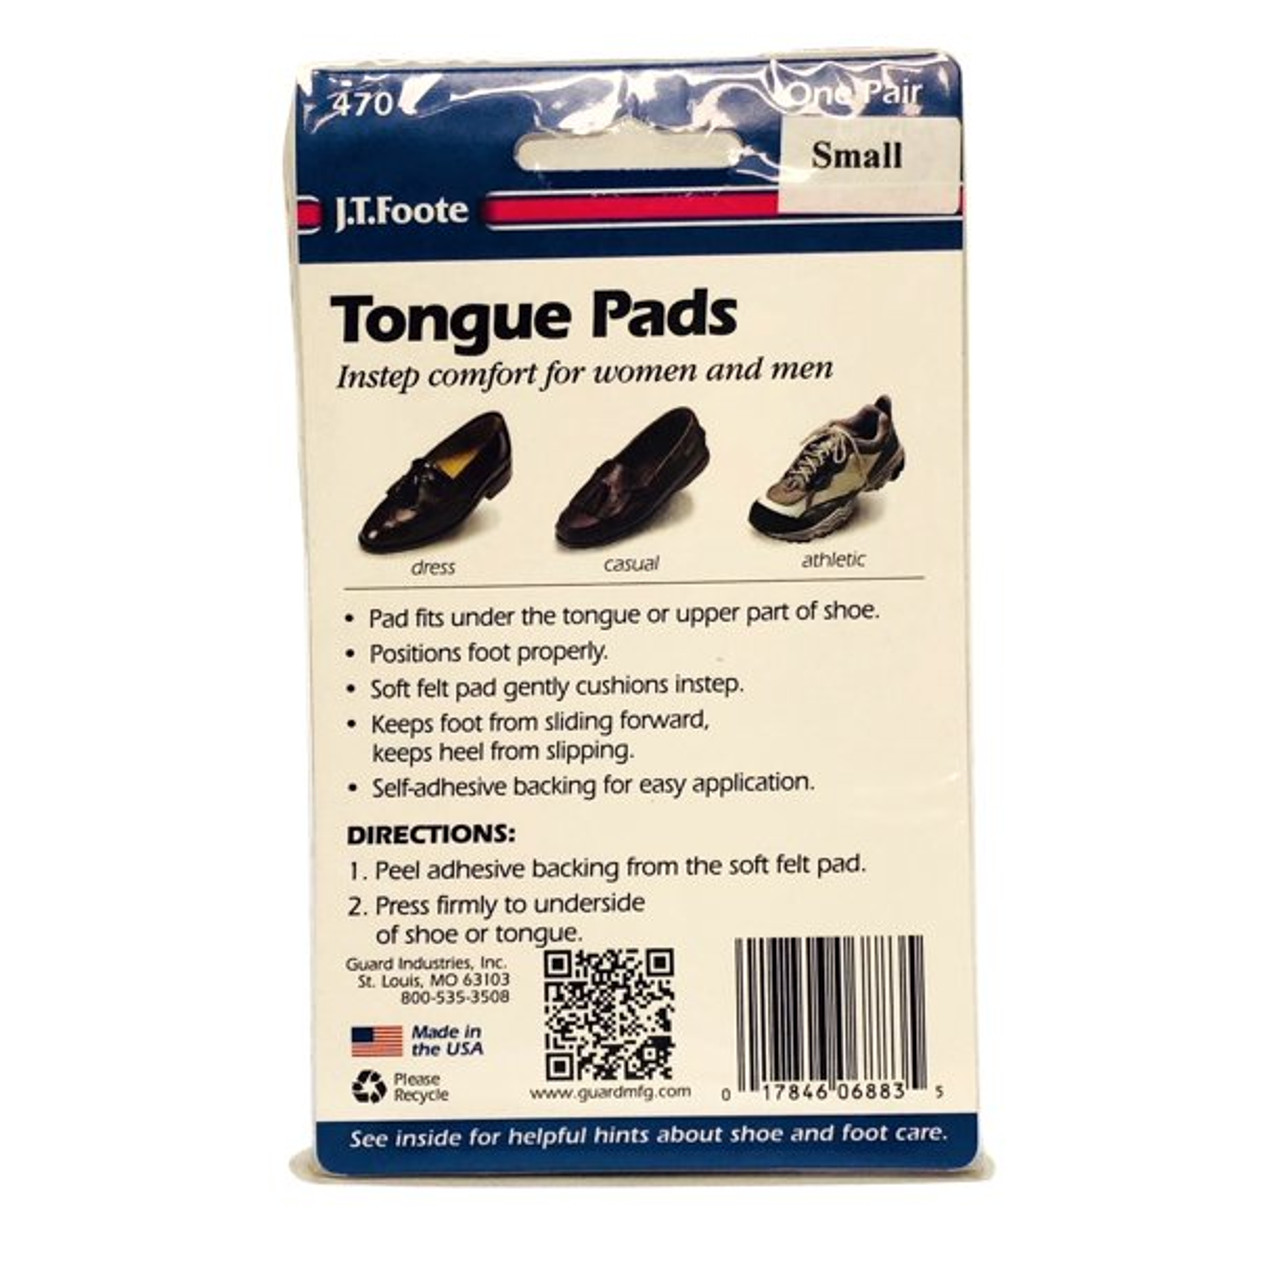 Tongue Pads